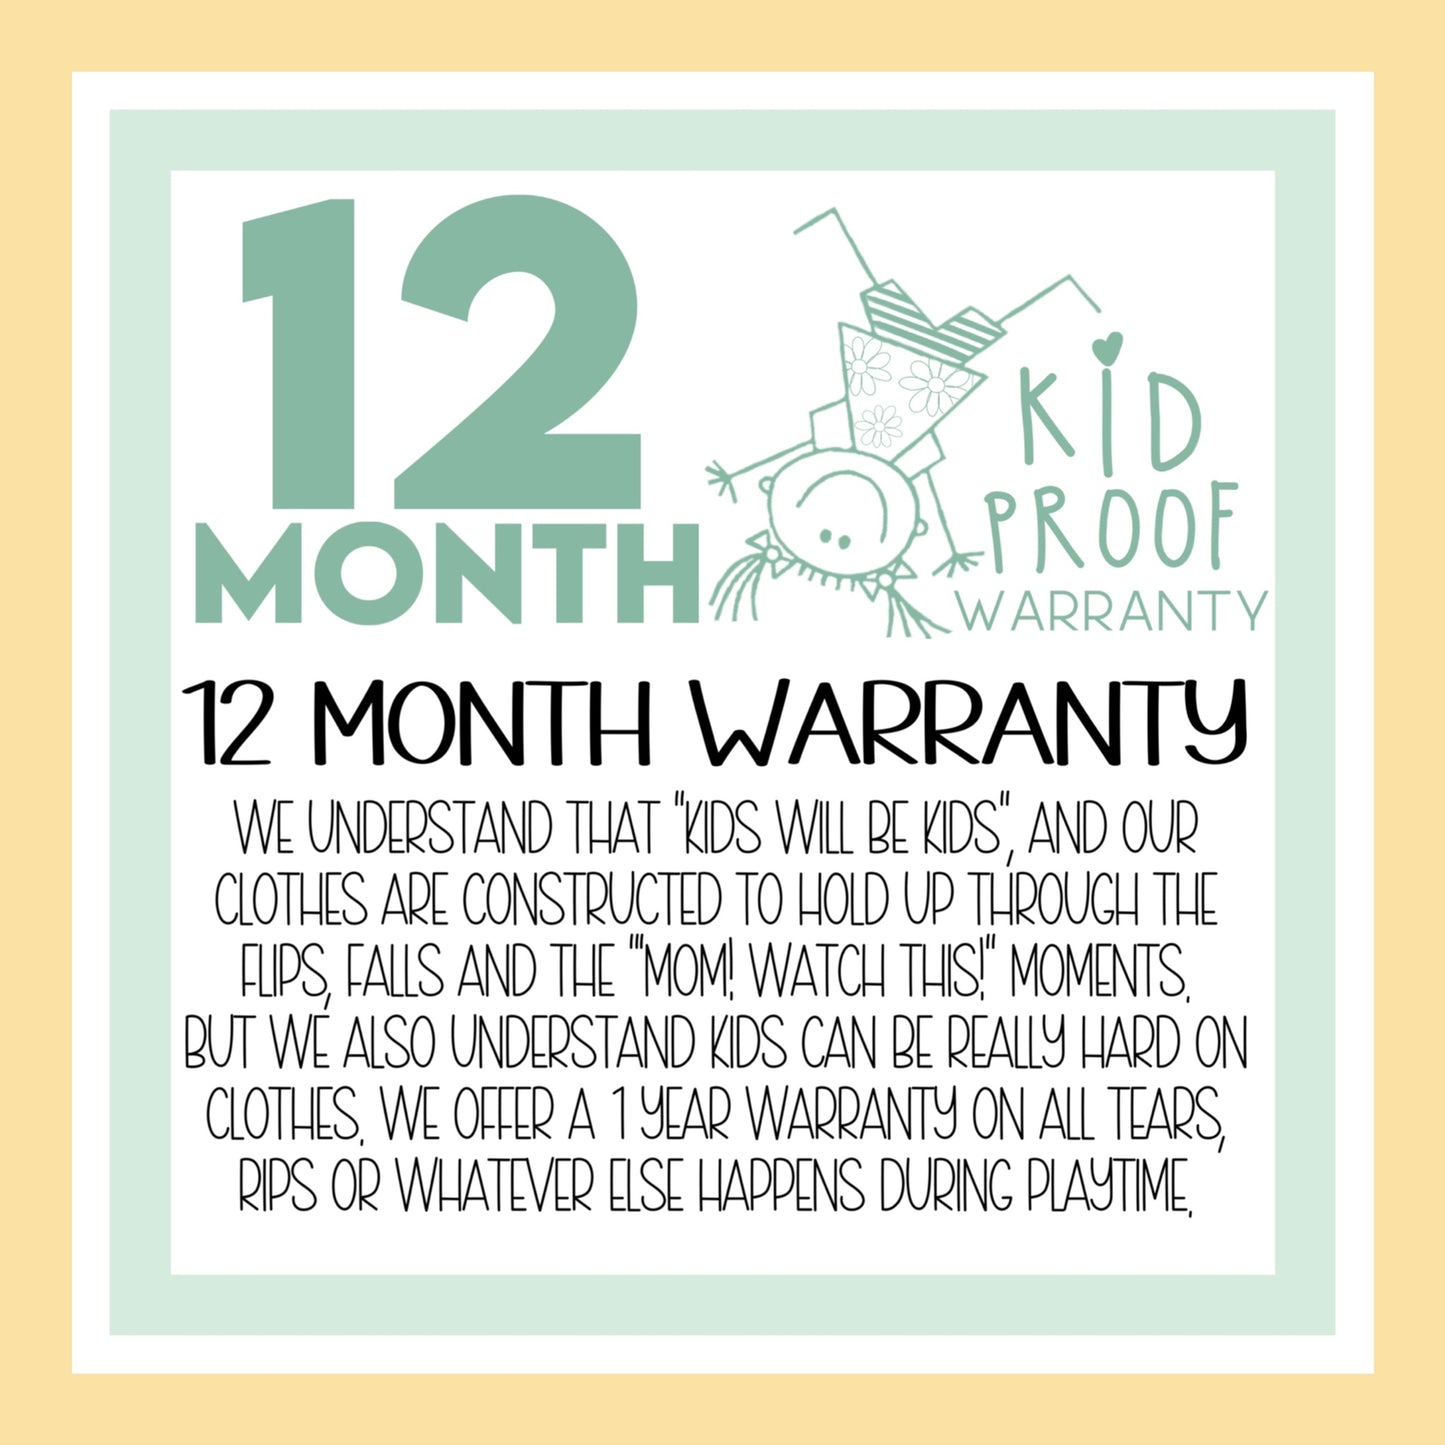 12 MONTH Kid Proof Warranty